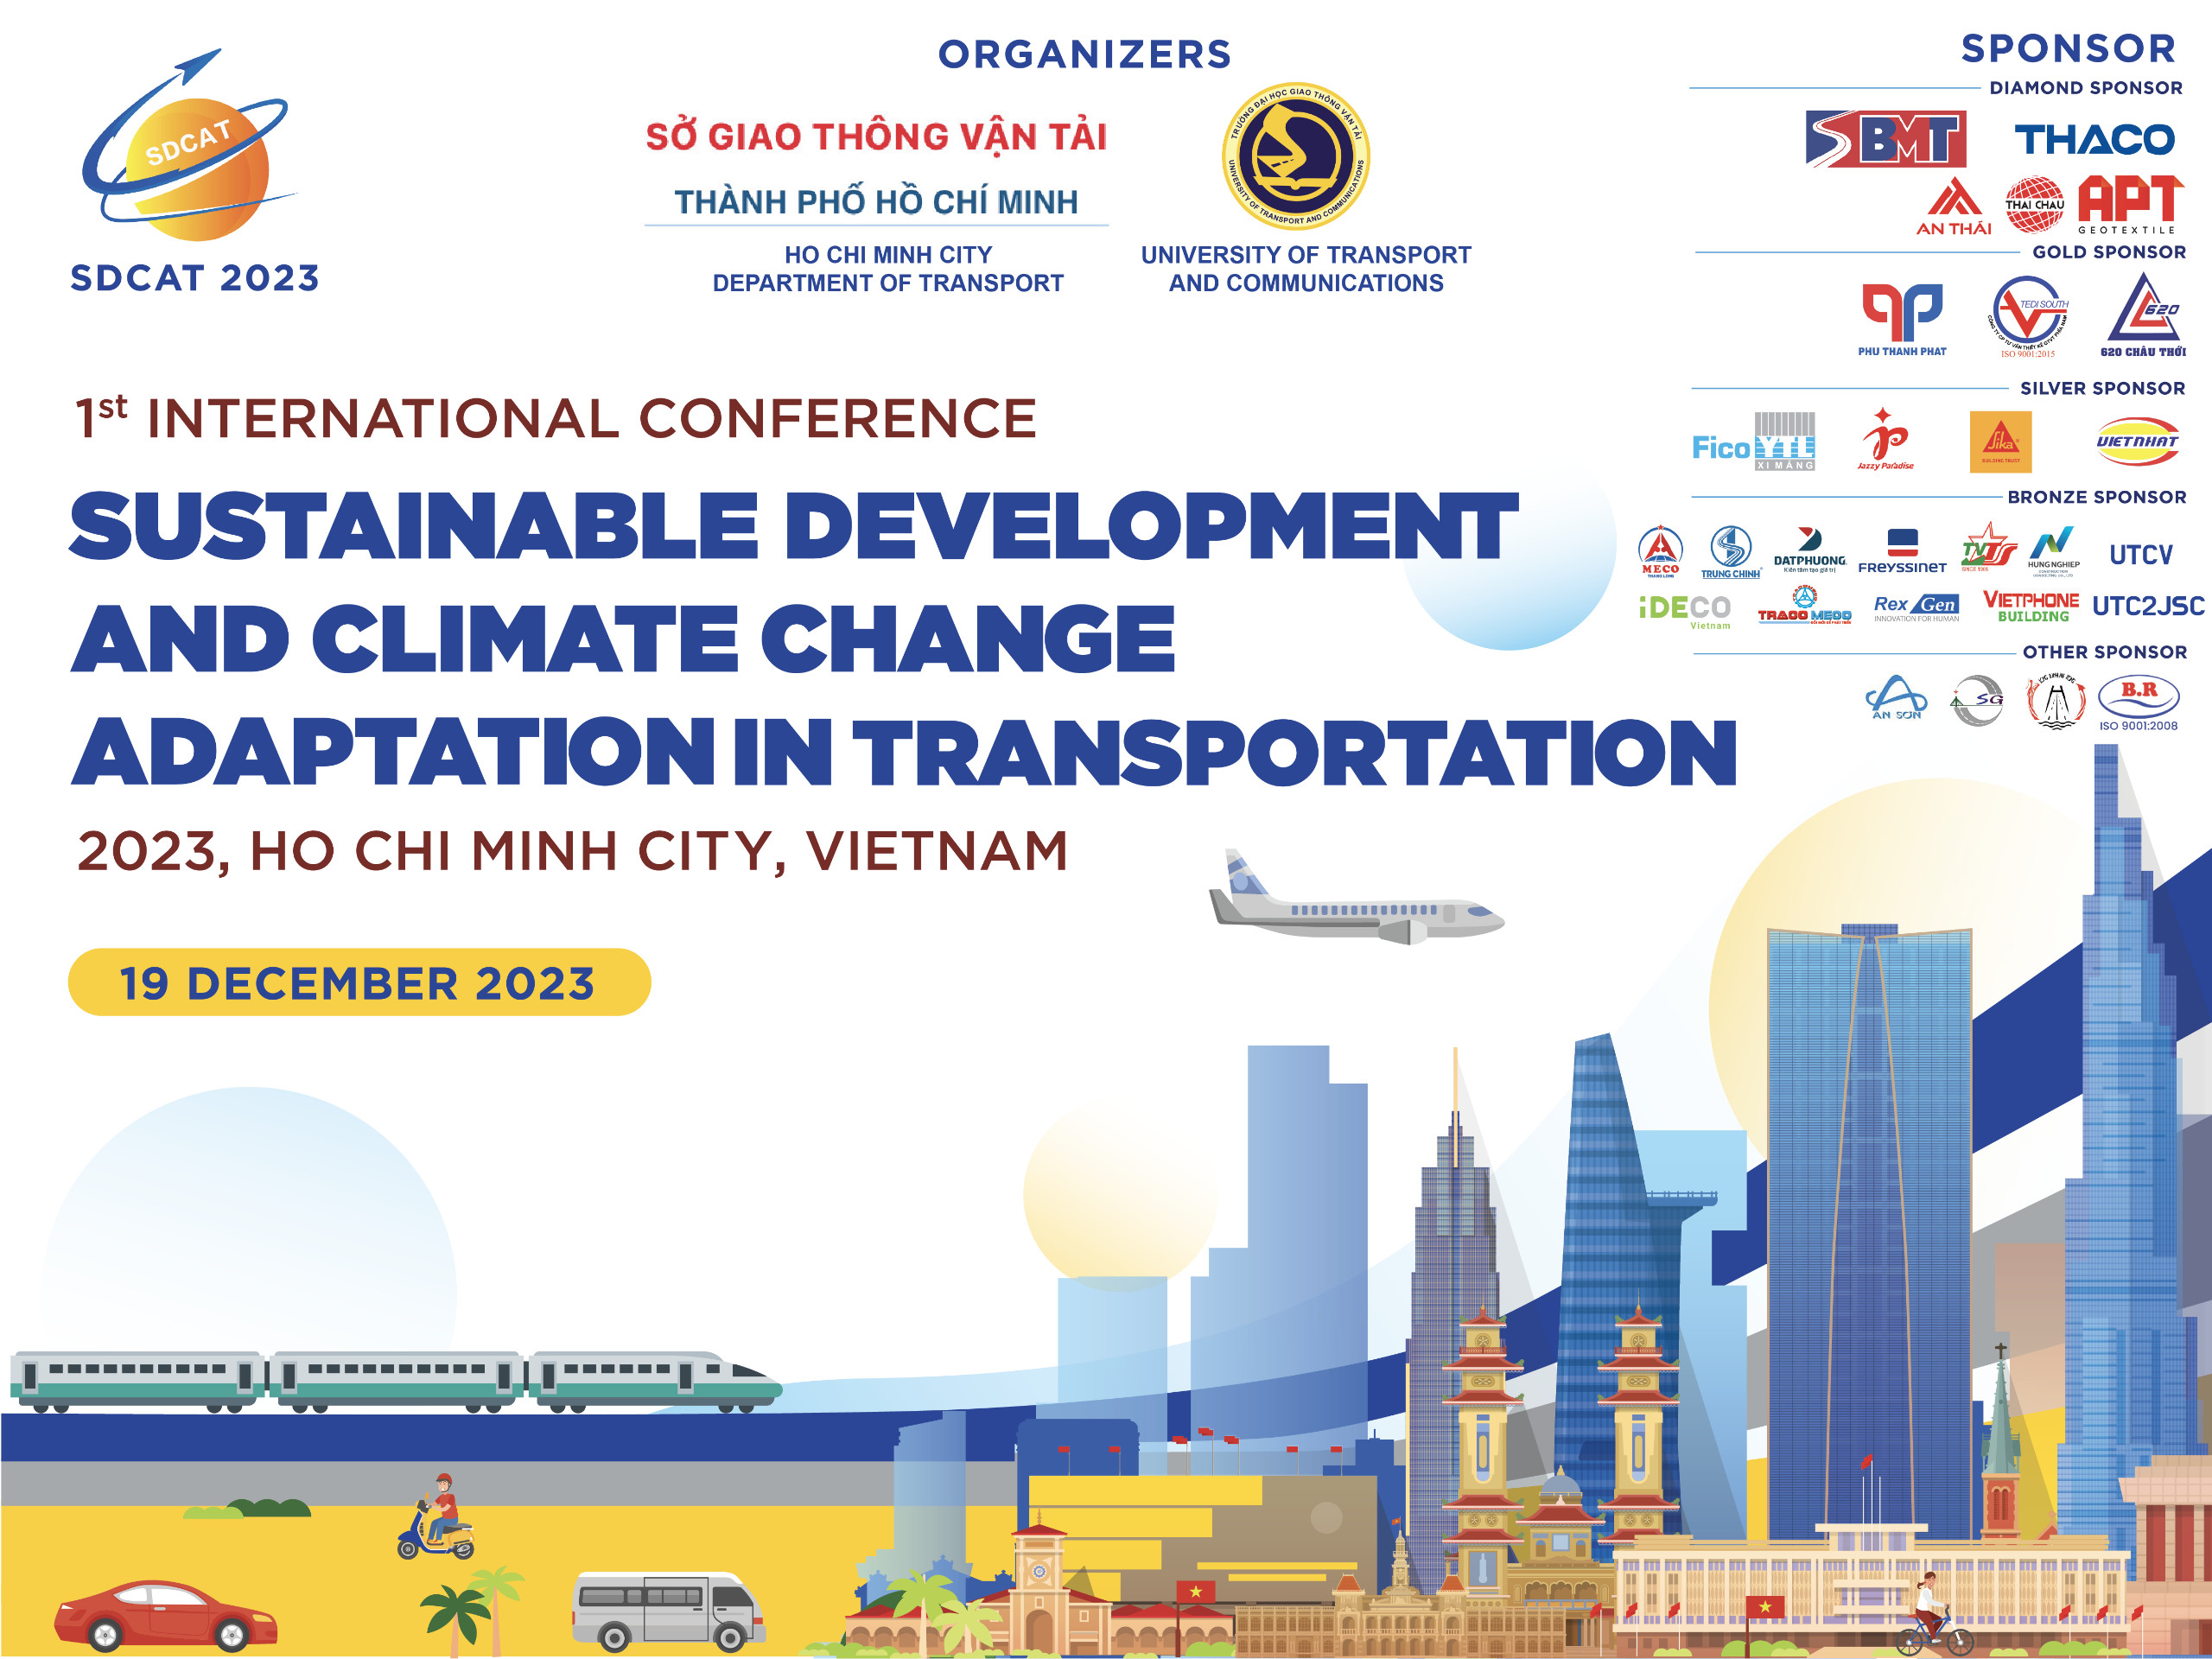 Thông cáo báo chí Hội thảo quốc tế về Phát triển bền vững và thích ứng với biến đổi khí hậu trong lĩnh vực giao thông vận tải năm 2023 (SDCAT 2023)